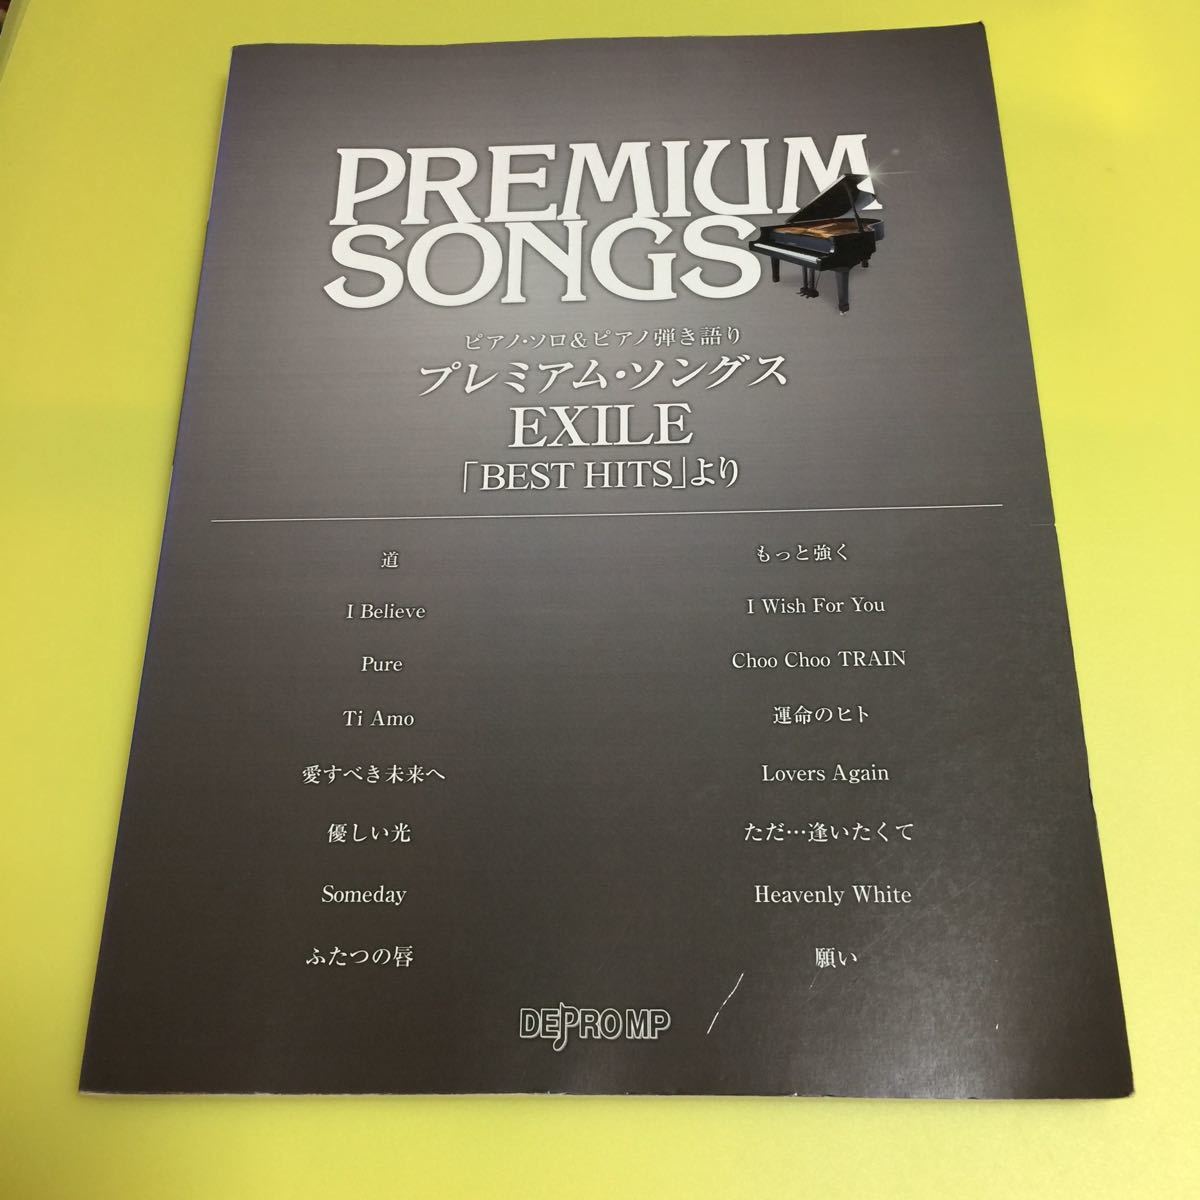 ピアノソロ&ピアノ弾き語り プレミアムソングス EXILE 「BEST HITS」より (ピアノ・ソロ&ピアノ弾き語り)